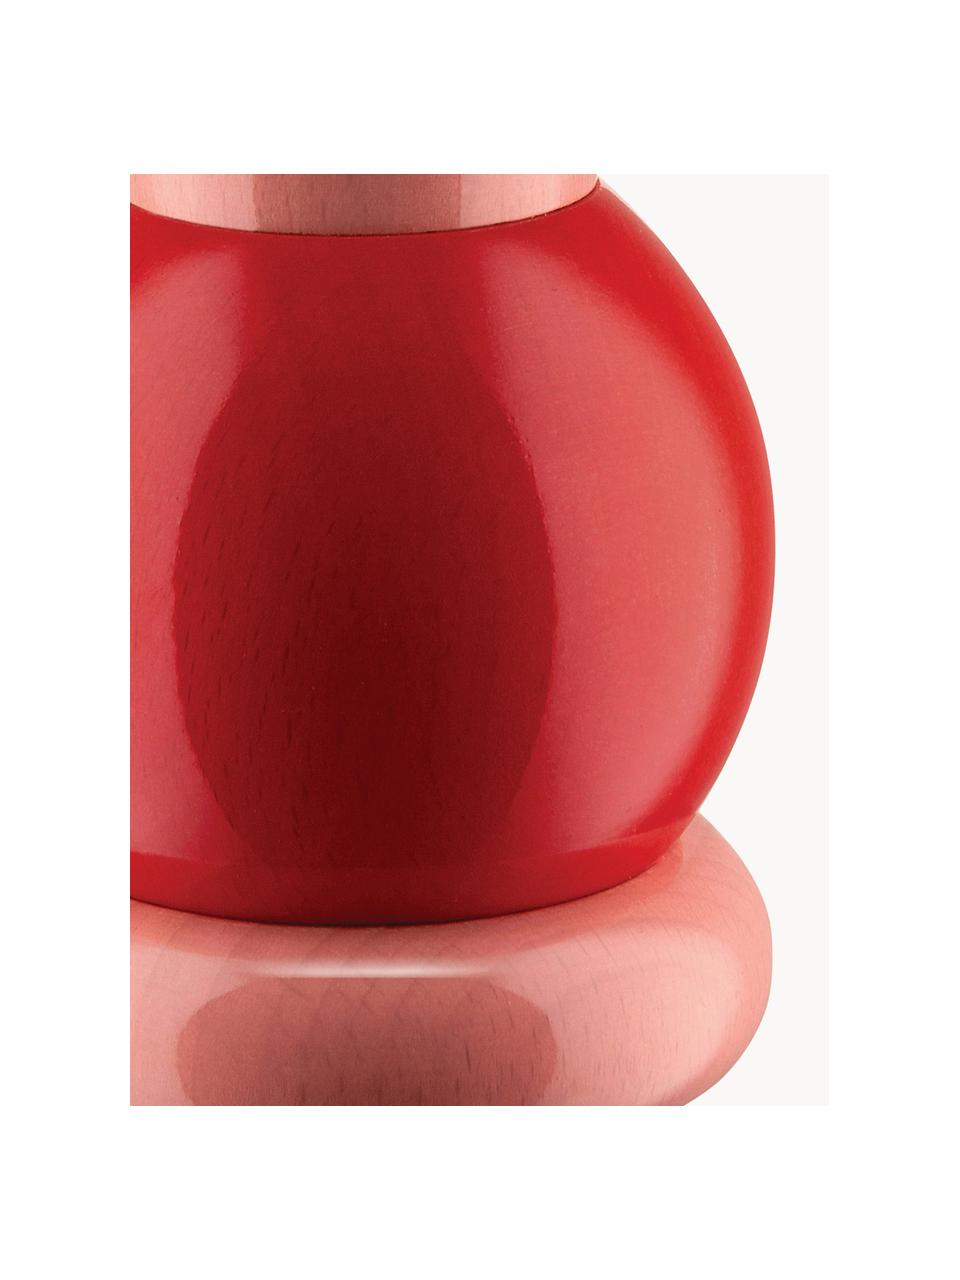 Molinillo de especias Twergi, Madera de haya, molinillo de cerámica, Rosa, rojo, amarillo sol, Ø 7 x Al 23 cm